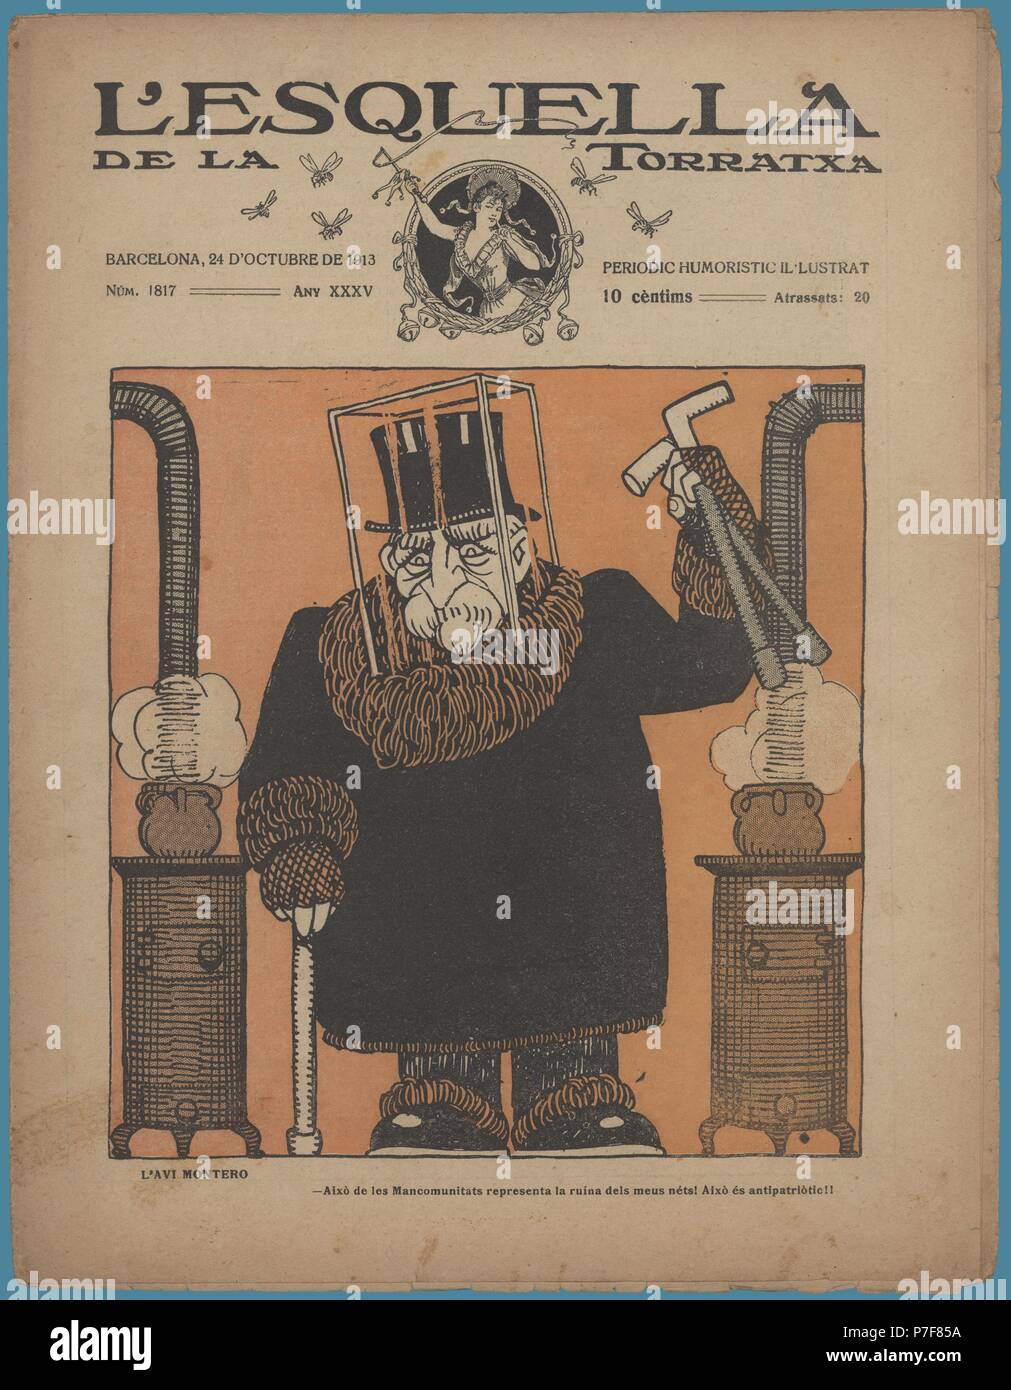 Portada de la revista satírica La Esquella de la Torratxa, editada en Barcelona, octubre de 1913. Stock Photo